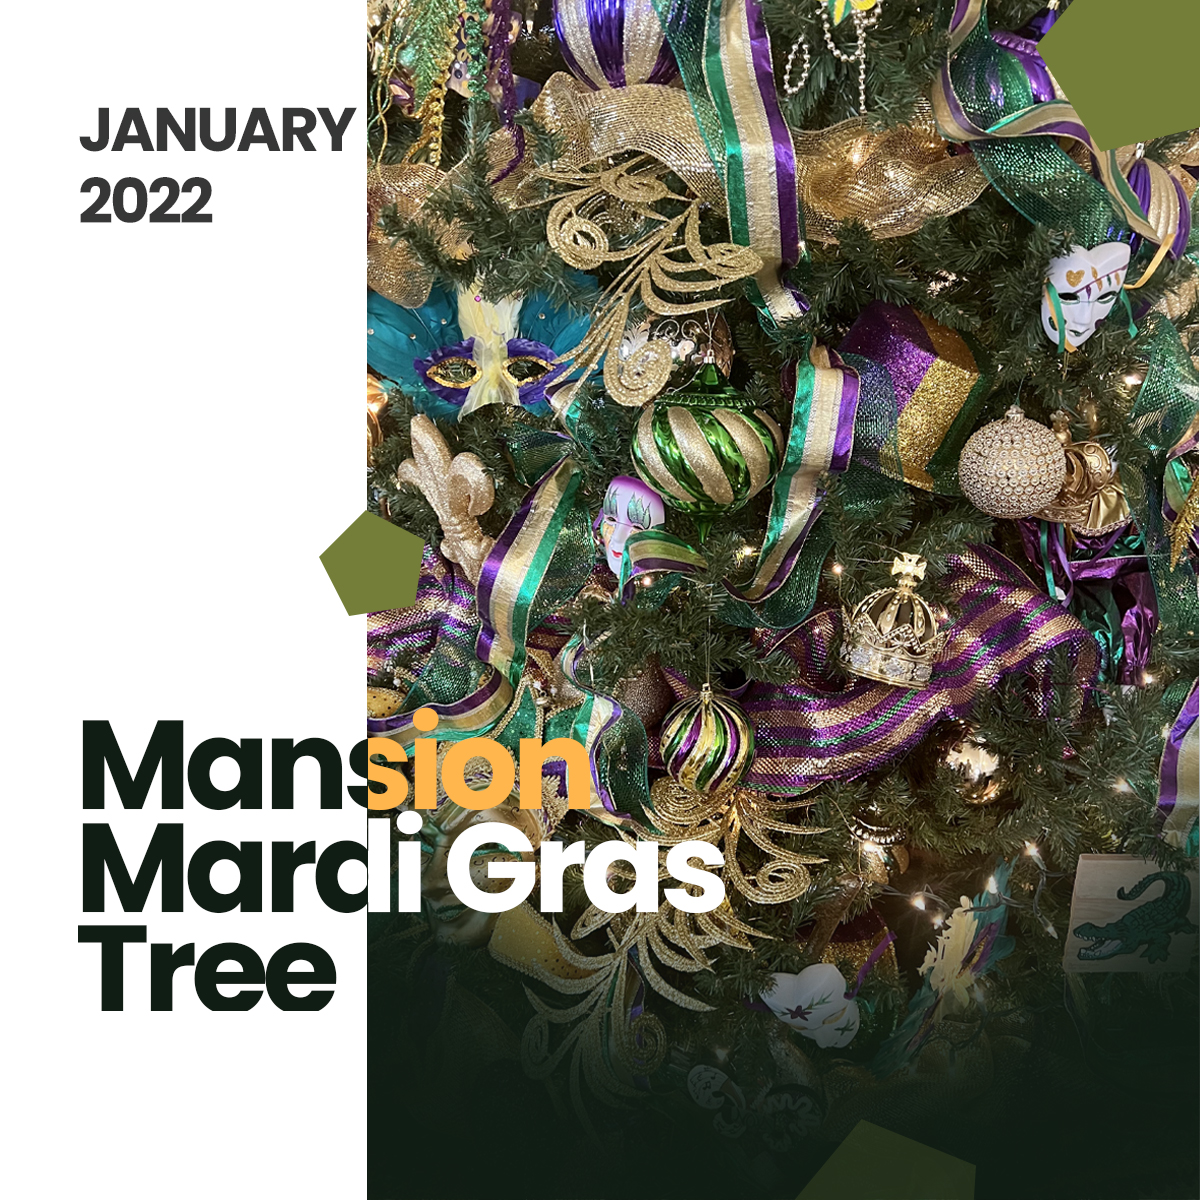 The Governor’s Mansion: Mardi Gras Tree